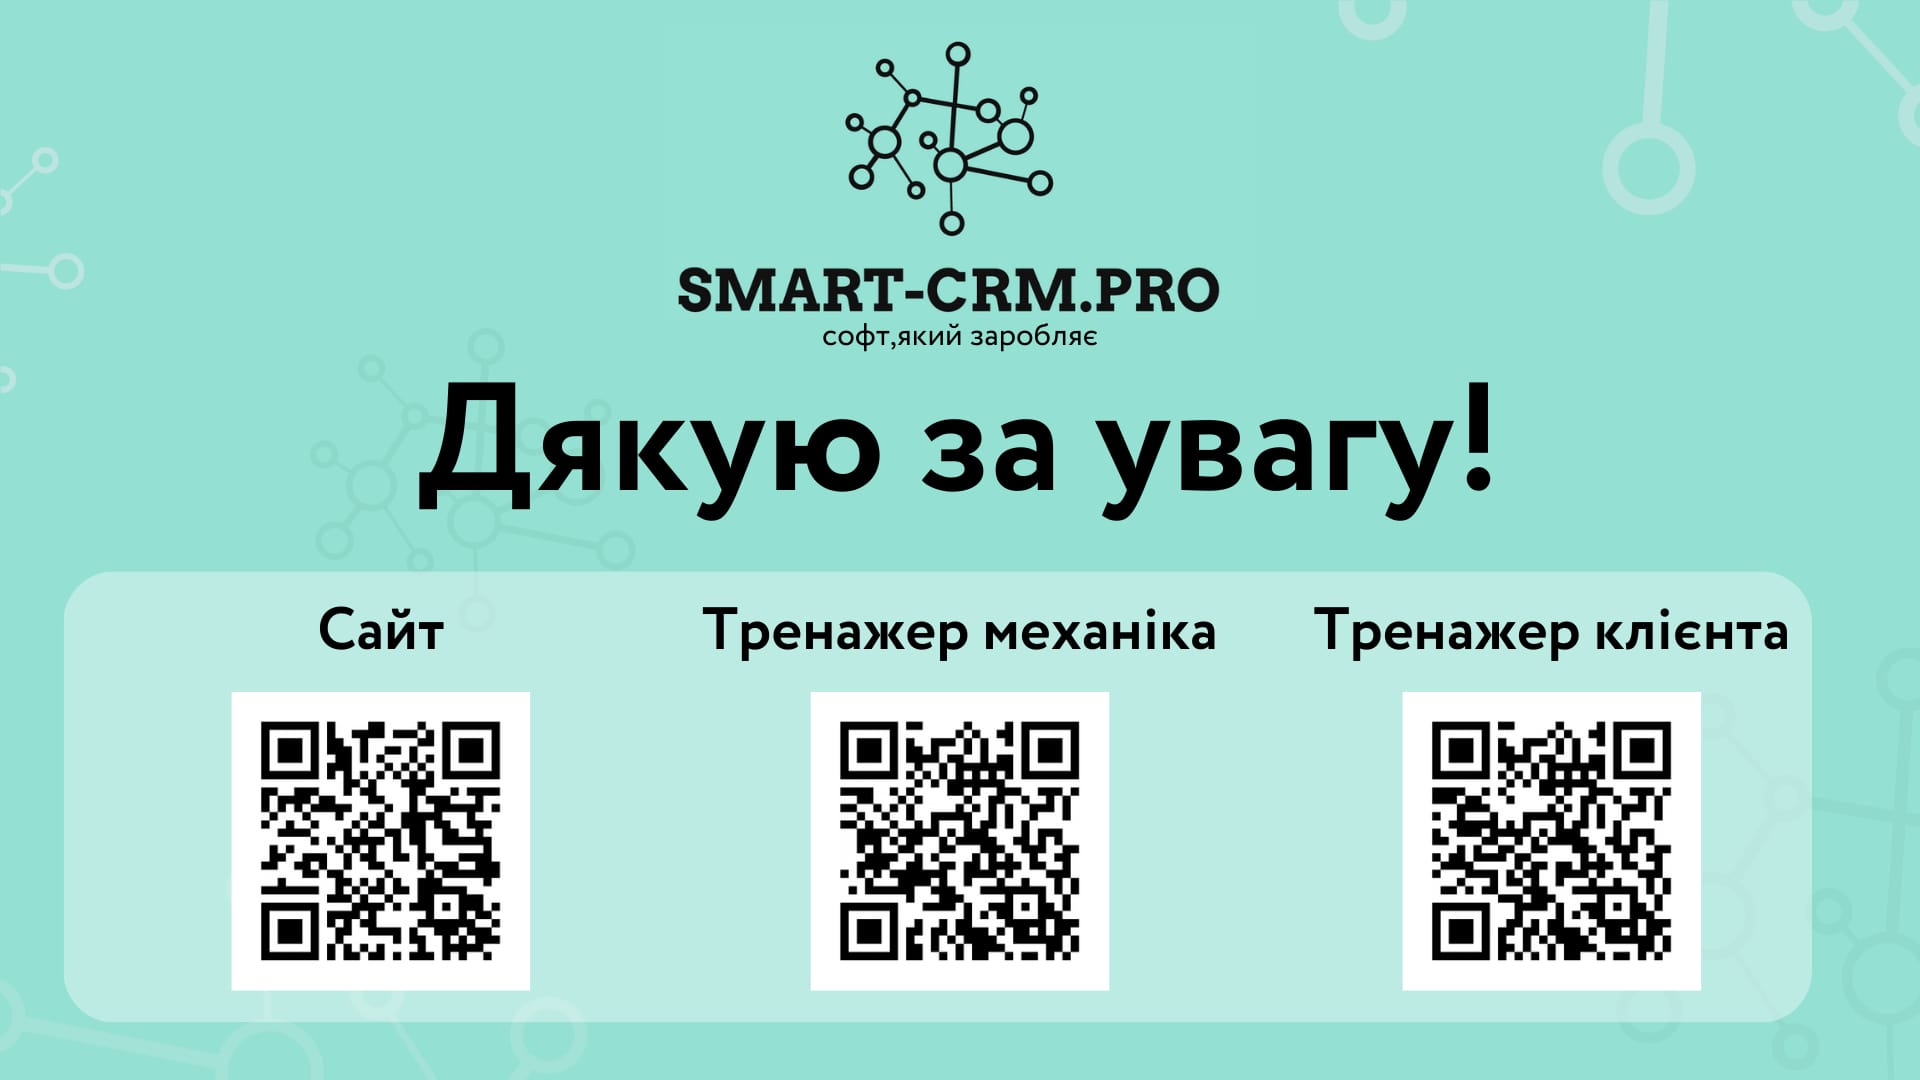 SMART-CRM.PRO